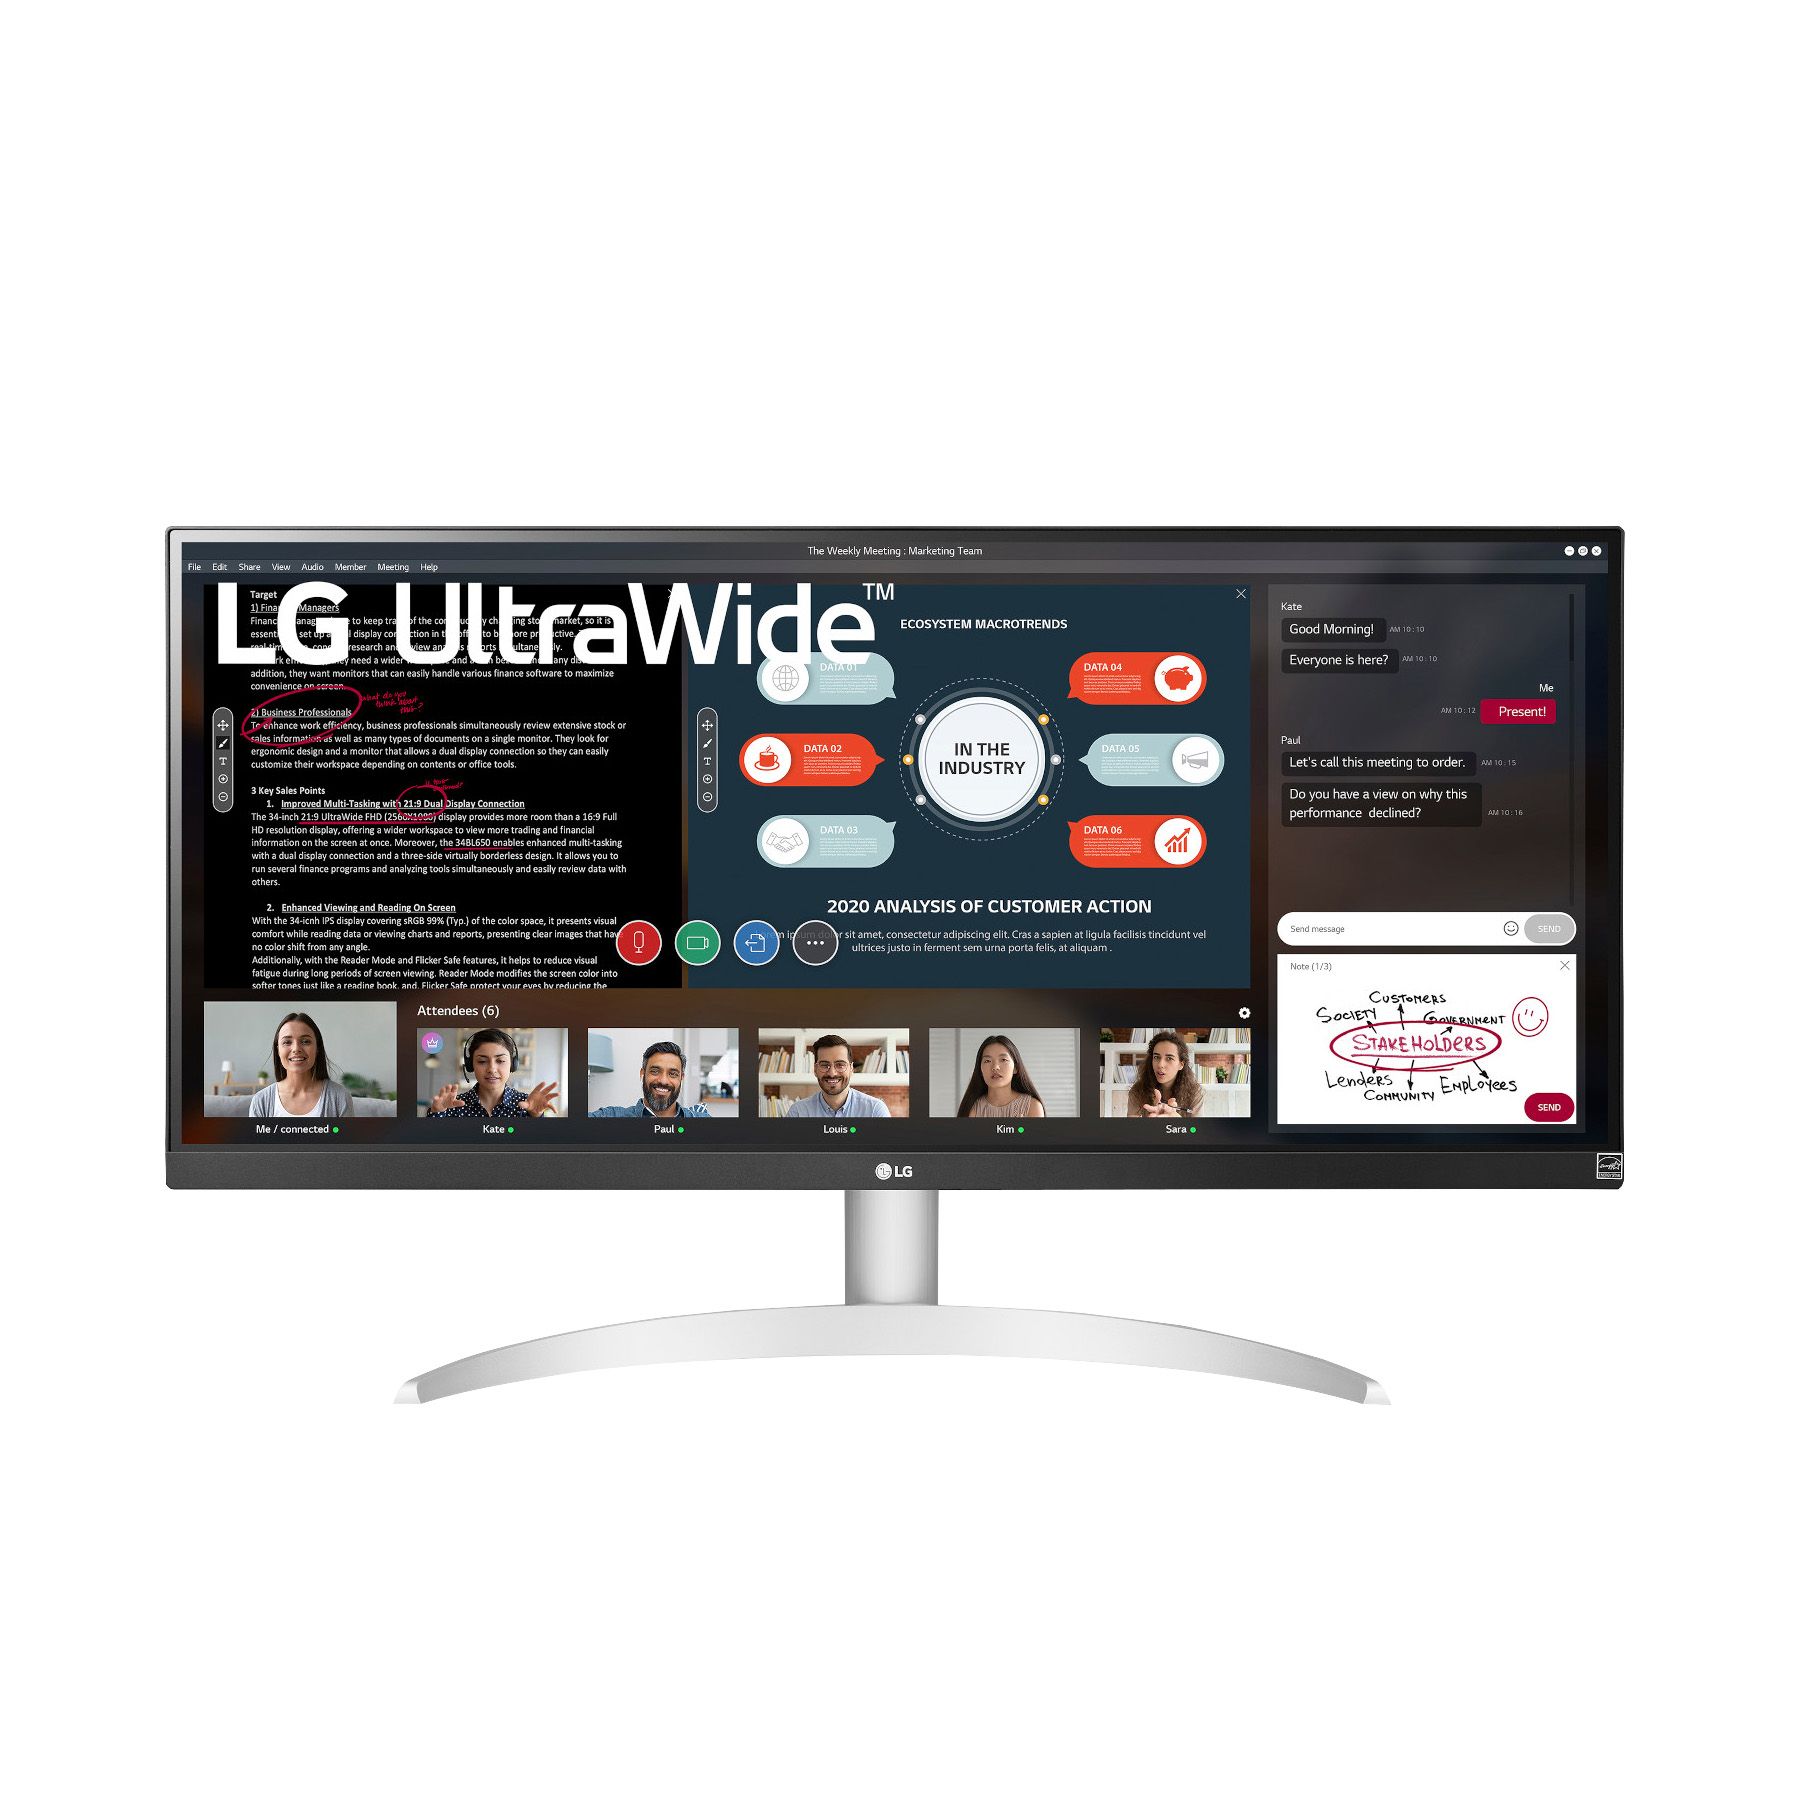 Lenovo G27-20 27 1080p LCD Gaming Monitor